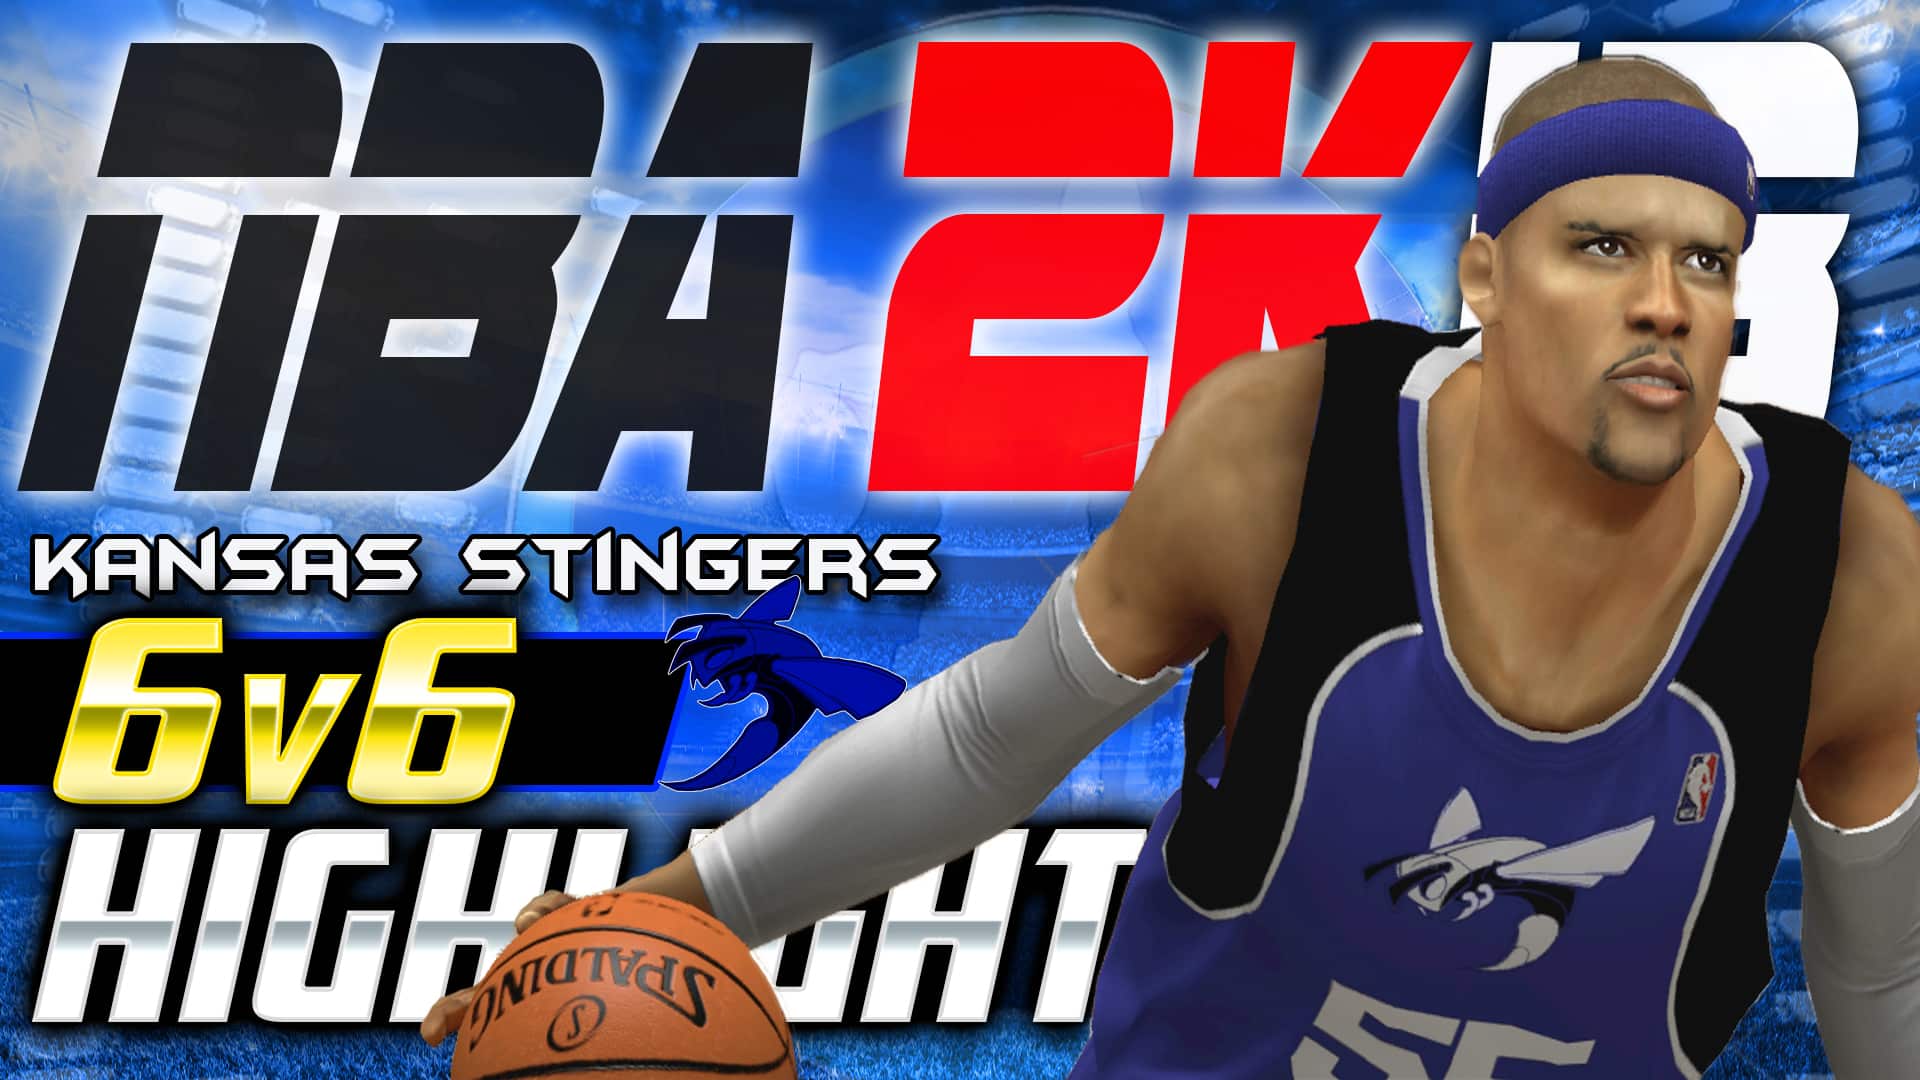 Kansas Stingers 6v6 - NBA 2K13 Game Highlights